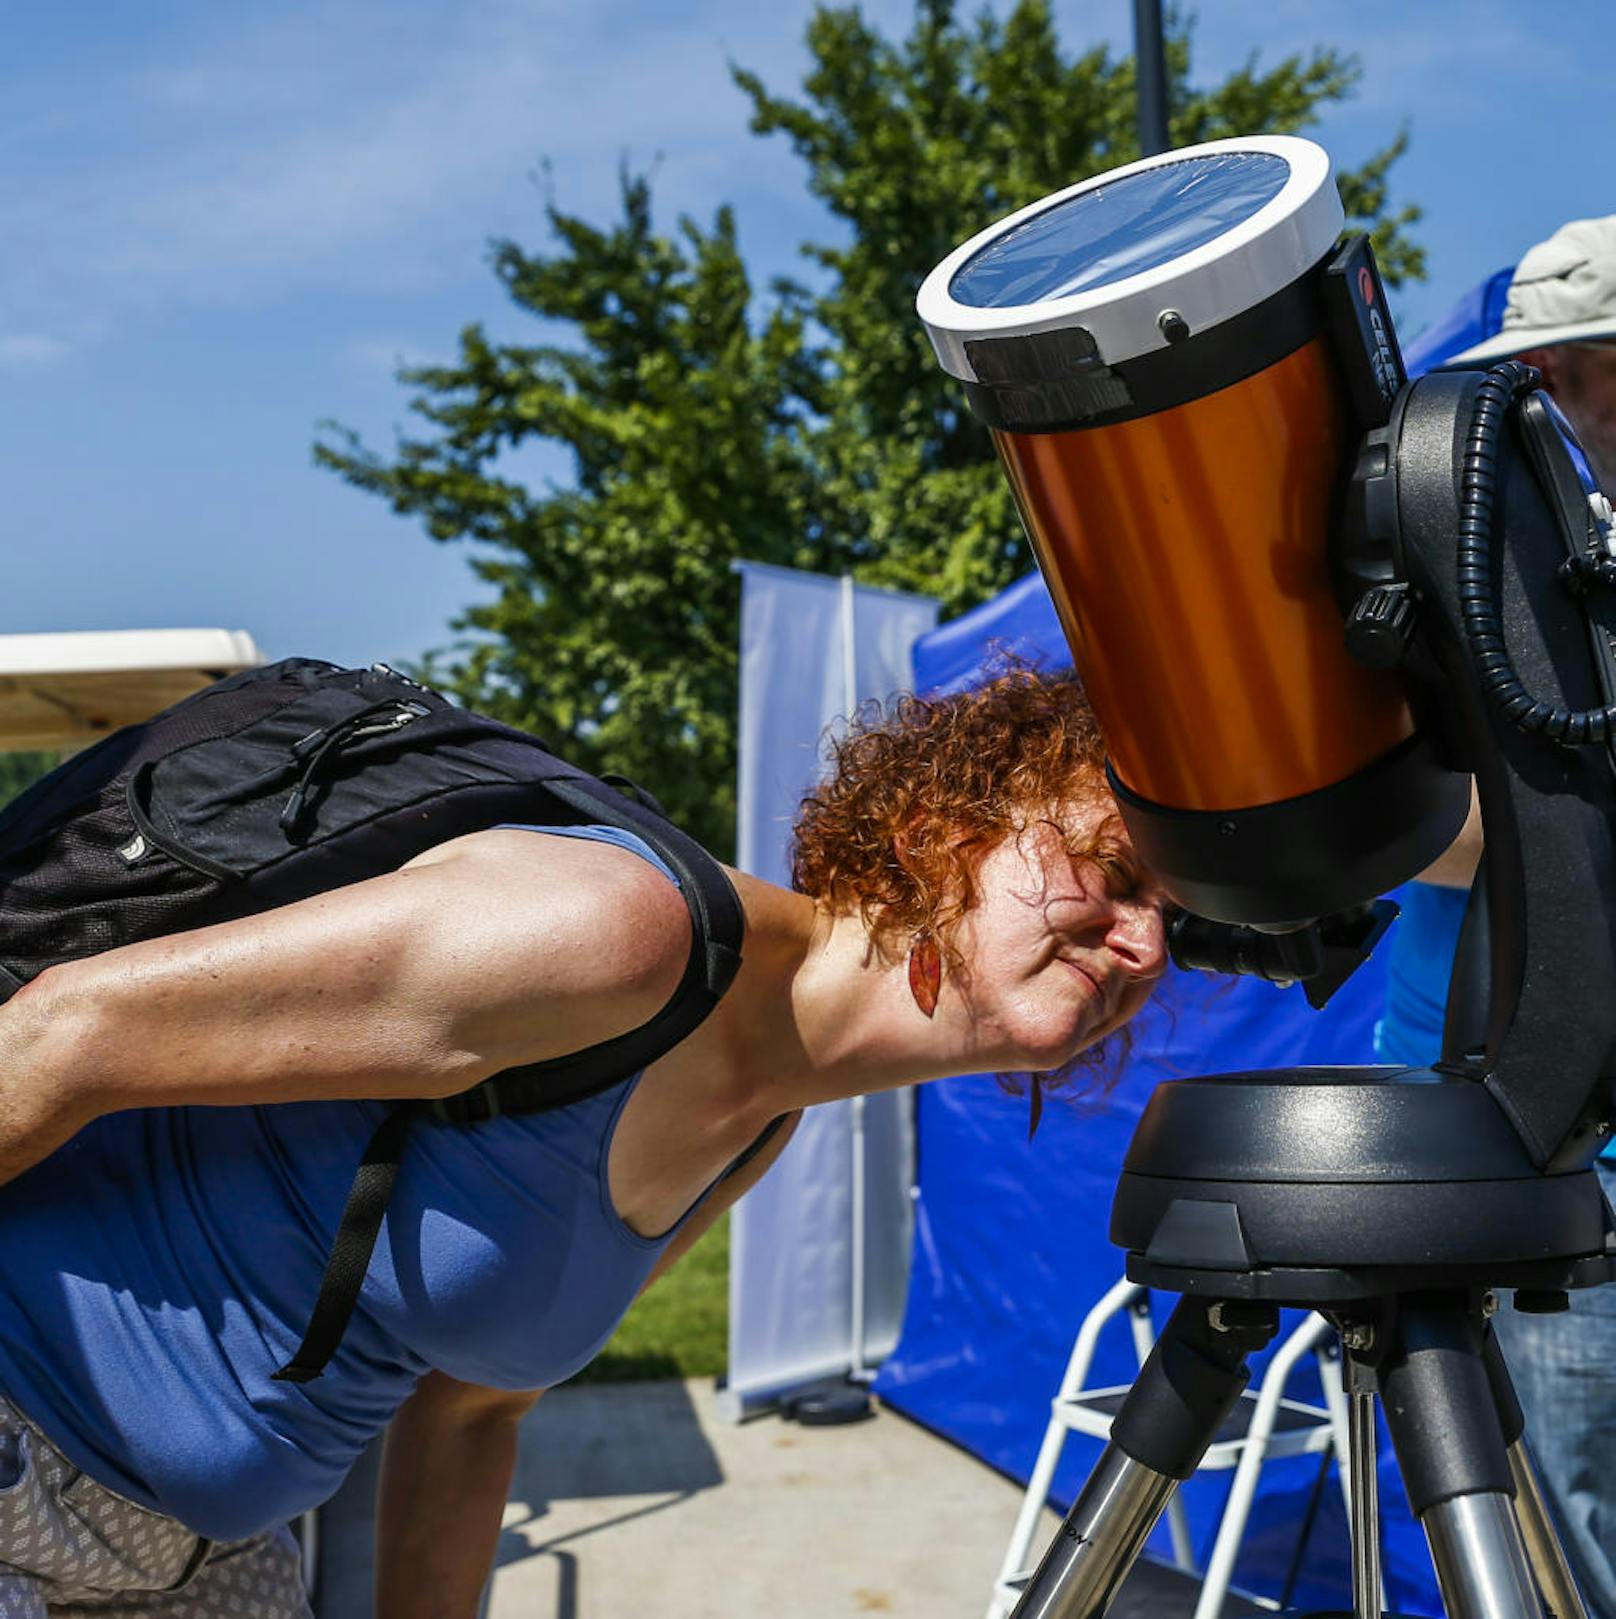 Wer sich die Sonnenfinsternis durch ein Teleskop ansieht, muss ebenfalls einen Sonnenfilter vorschrauben. Sonst droht Erblindungsgefahr!